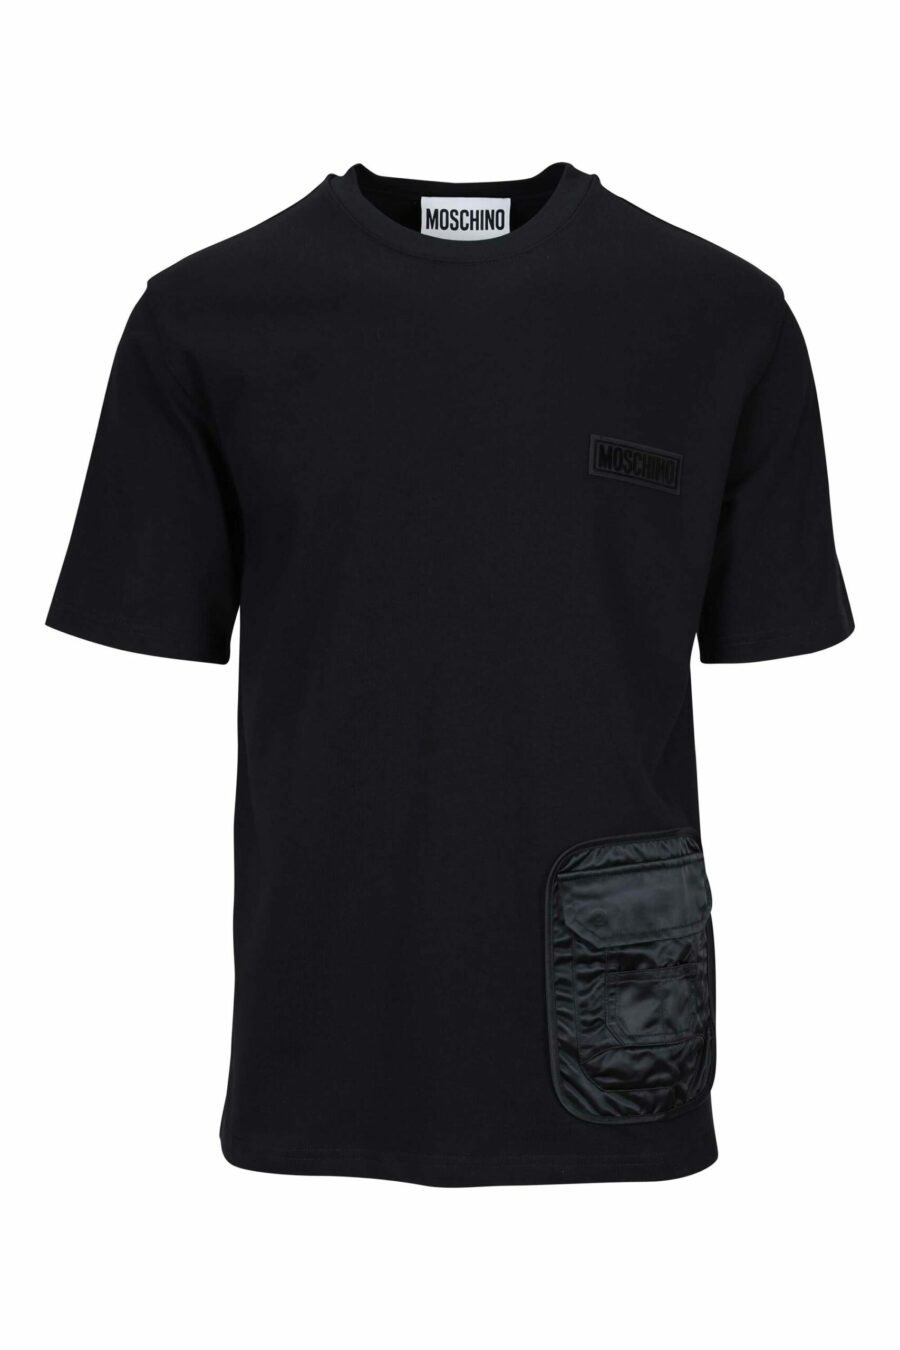 T-shirt noir mixte avec poche monochrome et étiquette logo - 667113452036 scaled